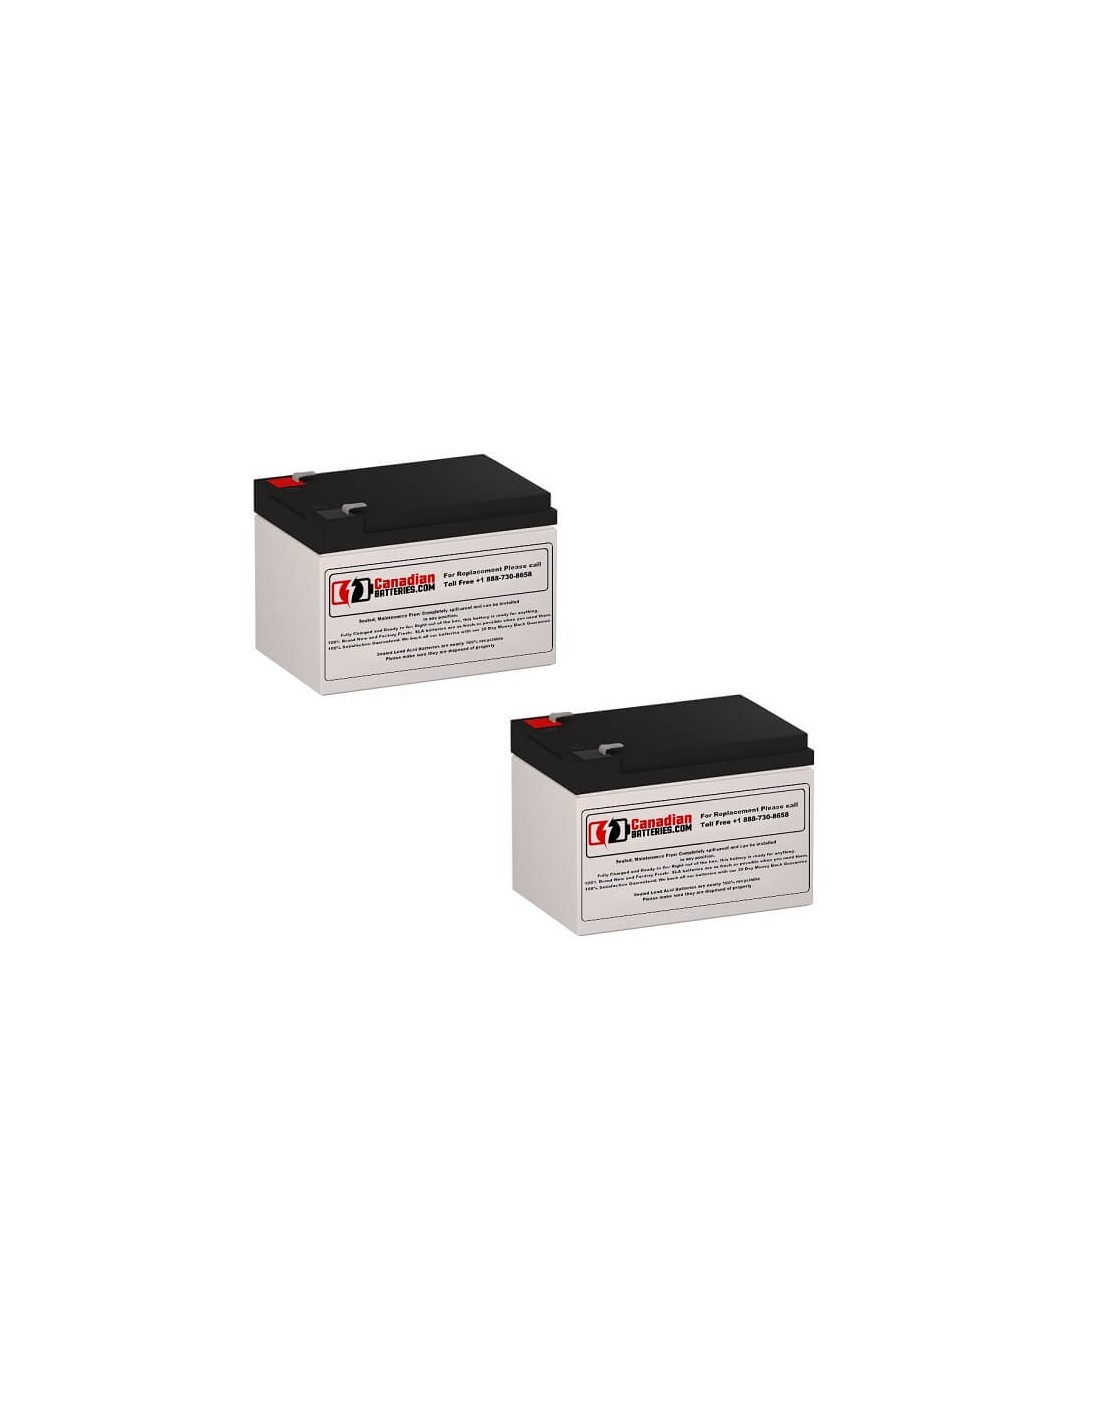 Batteries for Belkin Netups F6c100 UPS, 2 x 12V, 12Ah - 144Wh